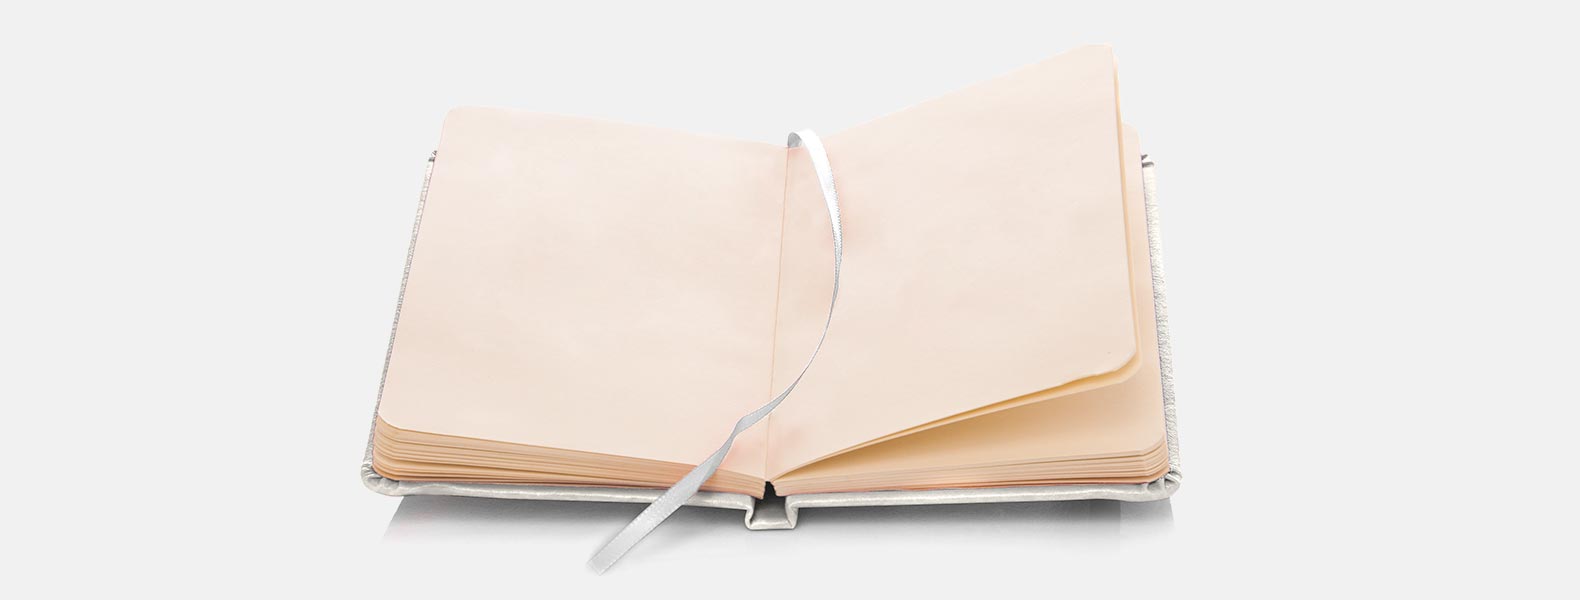 Caderno para anotações branco com capa dura em Courino. Conta com 80 folhas não pautadas e elástico para fechamento. Gramatura da folha de 70 g/m2.